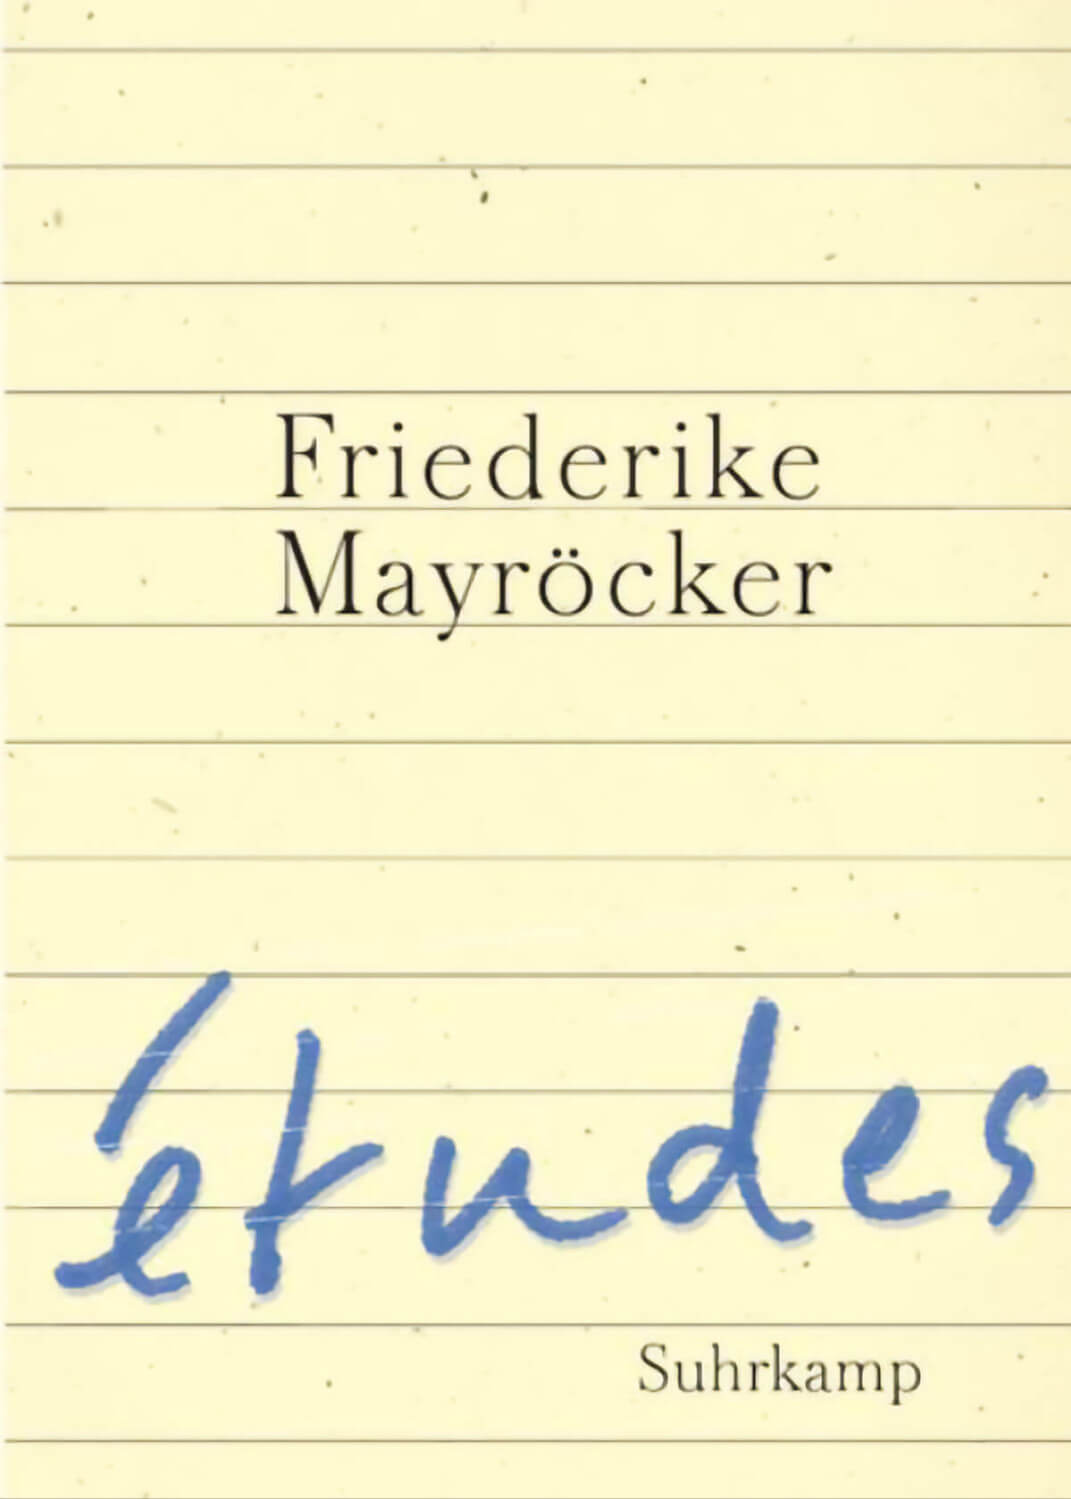 Friederike Mayröcker: études